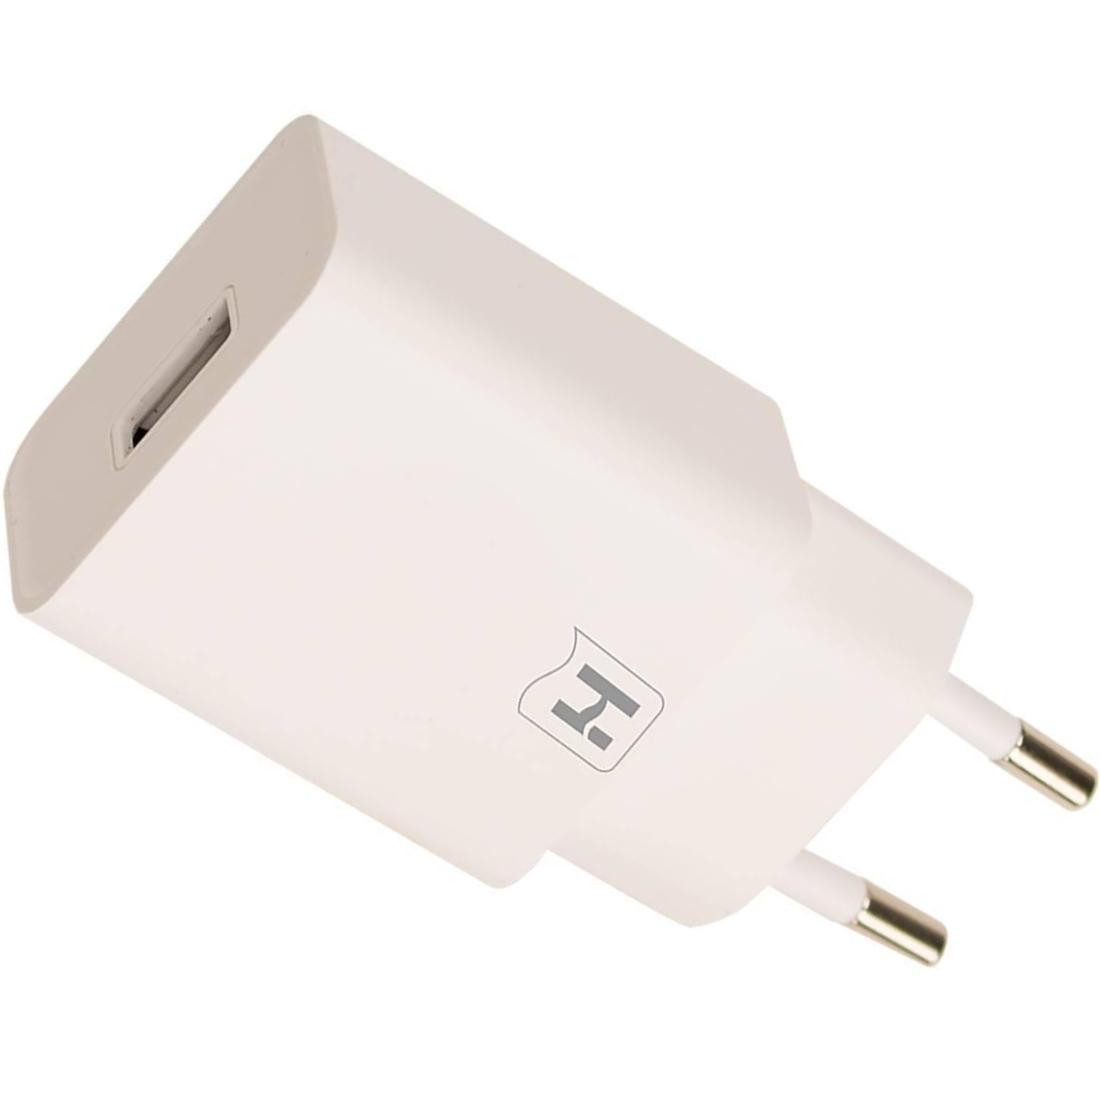 Chargeur micro USB pour tablette PC / Téléphone mobile, sortie: DC 5V / 2A,  plug UA